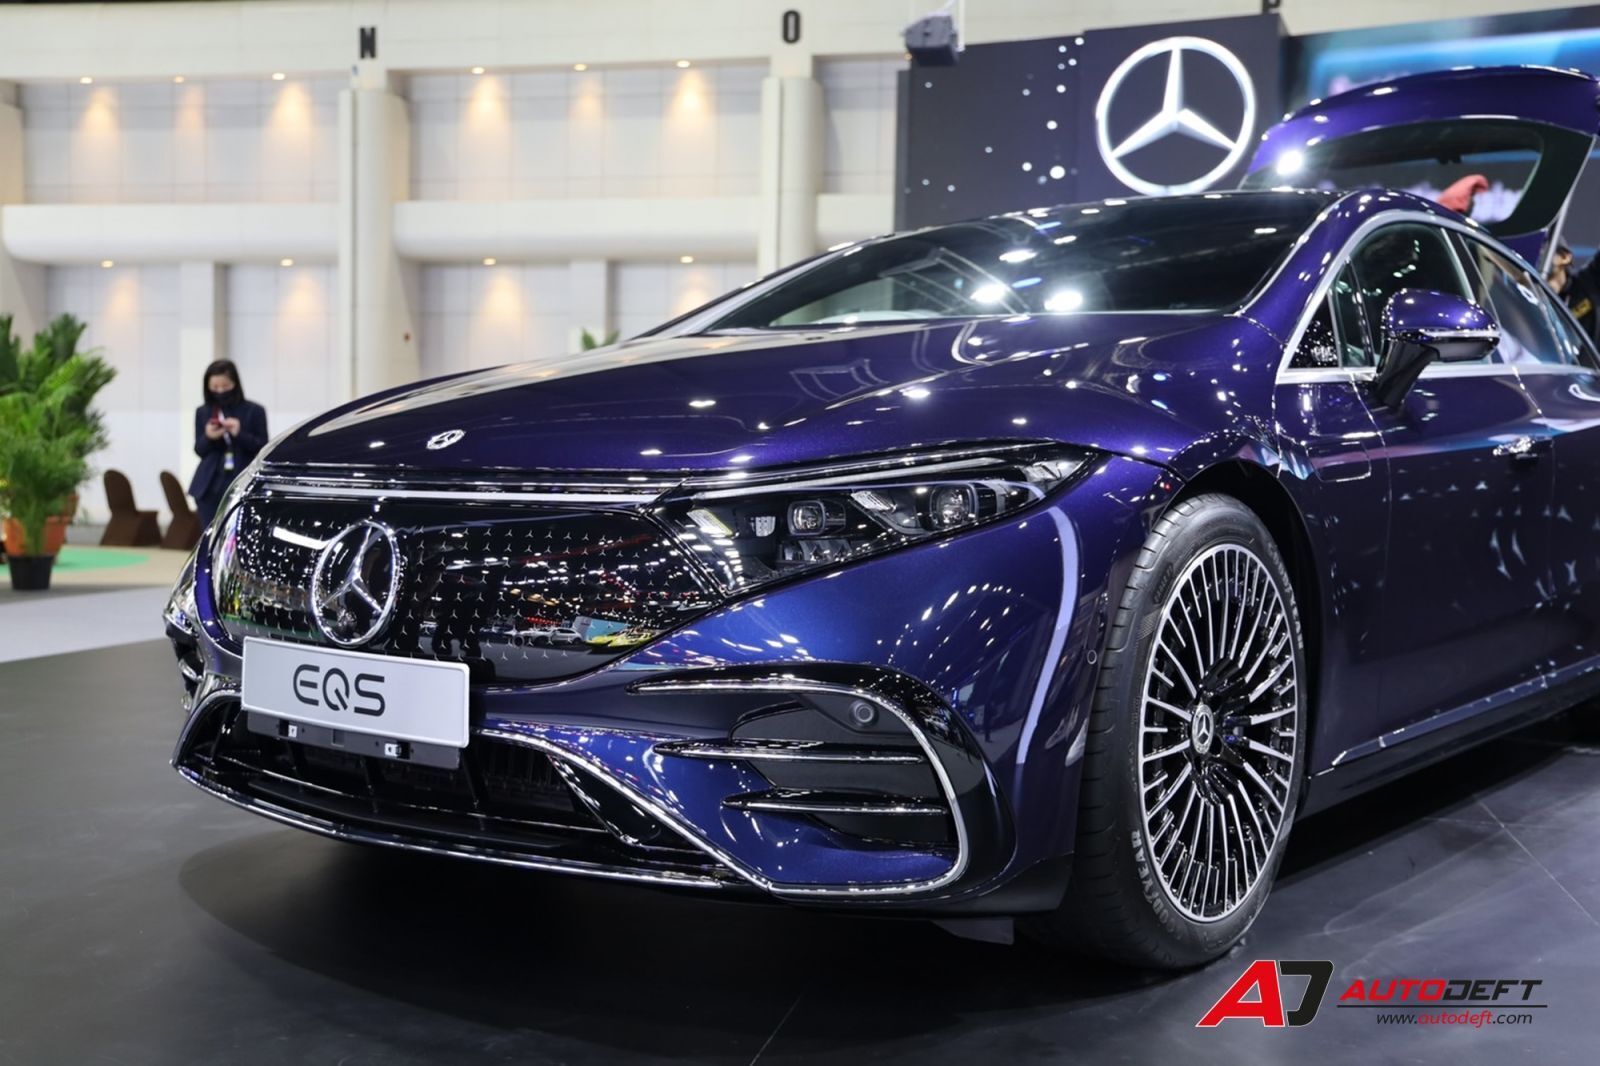 The new EQS 450+ AMG Premium